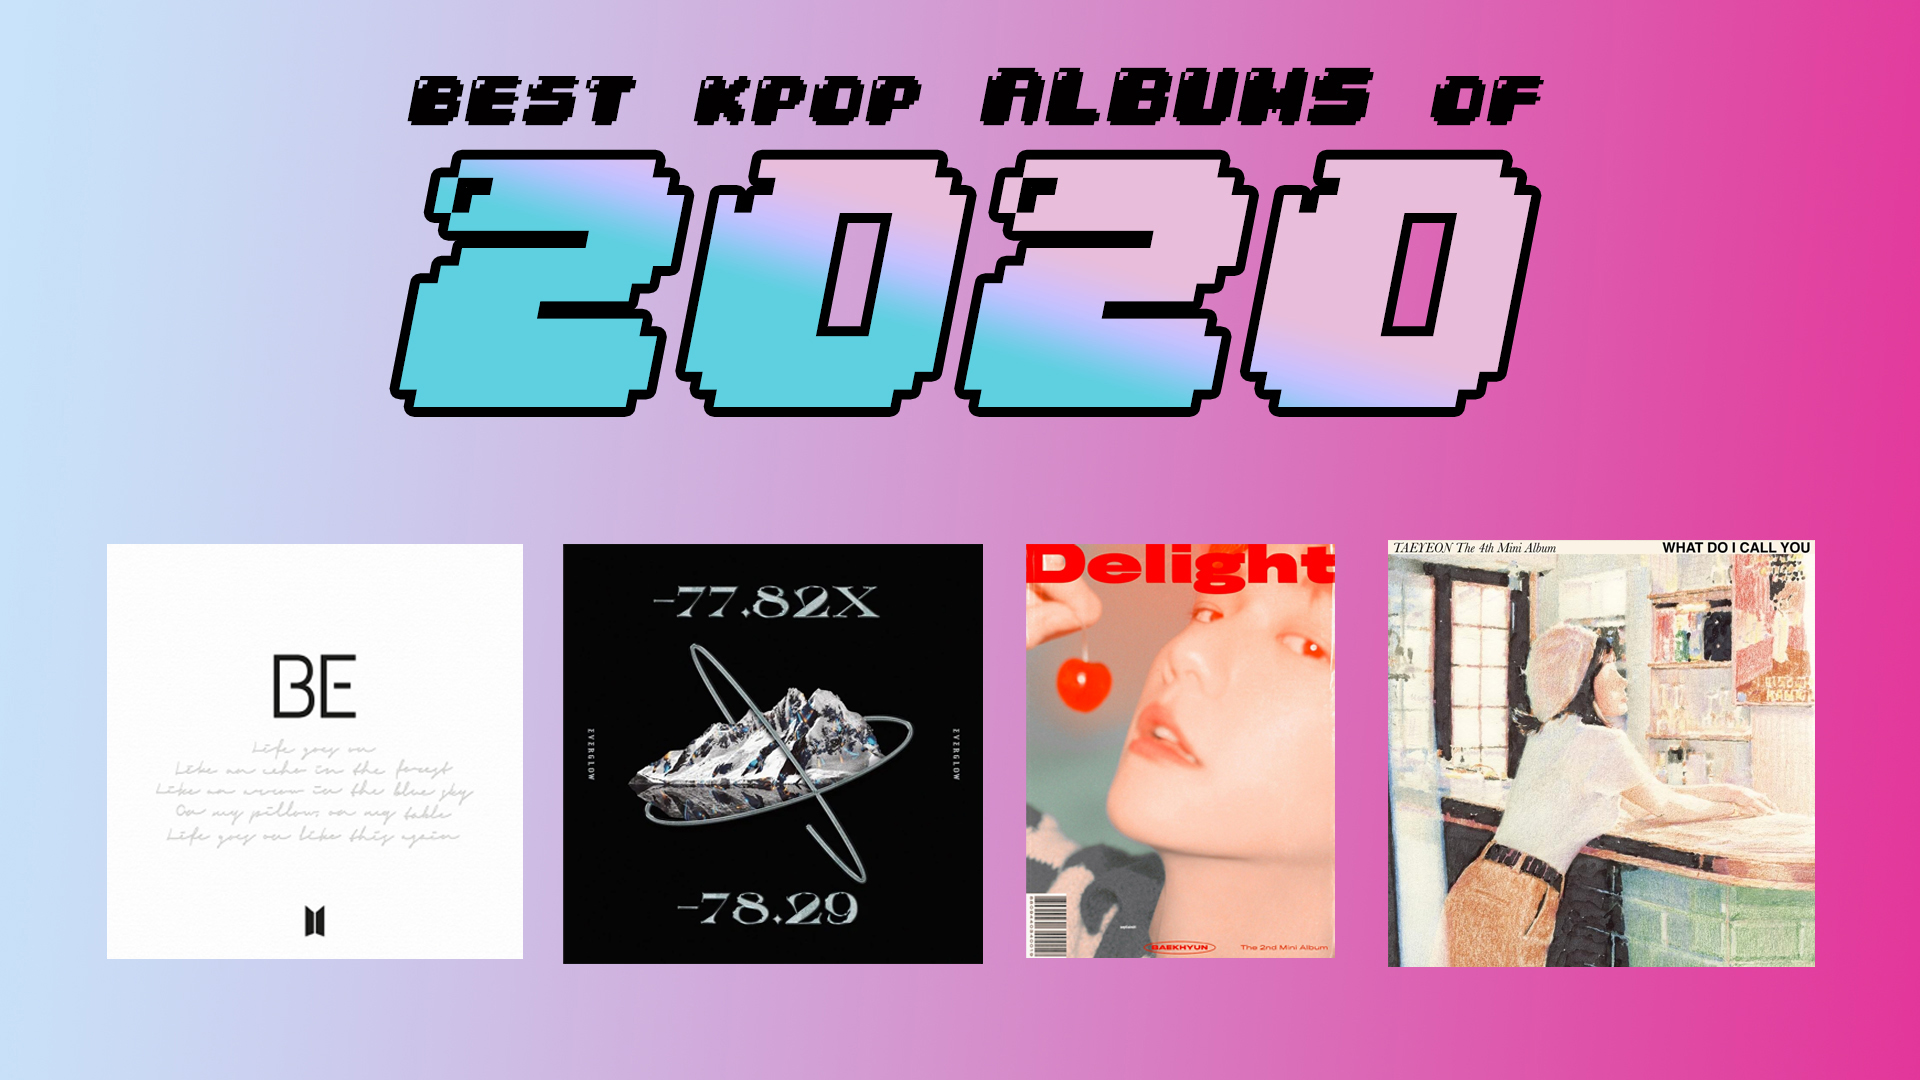 Best albums 2020 - KultScene